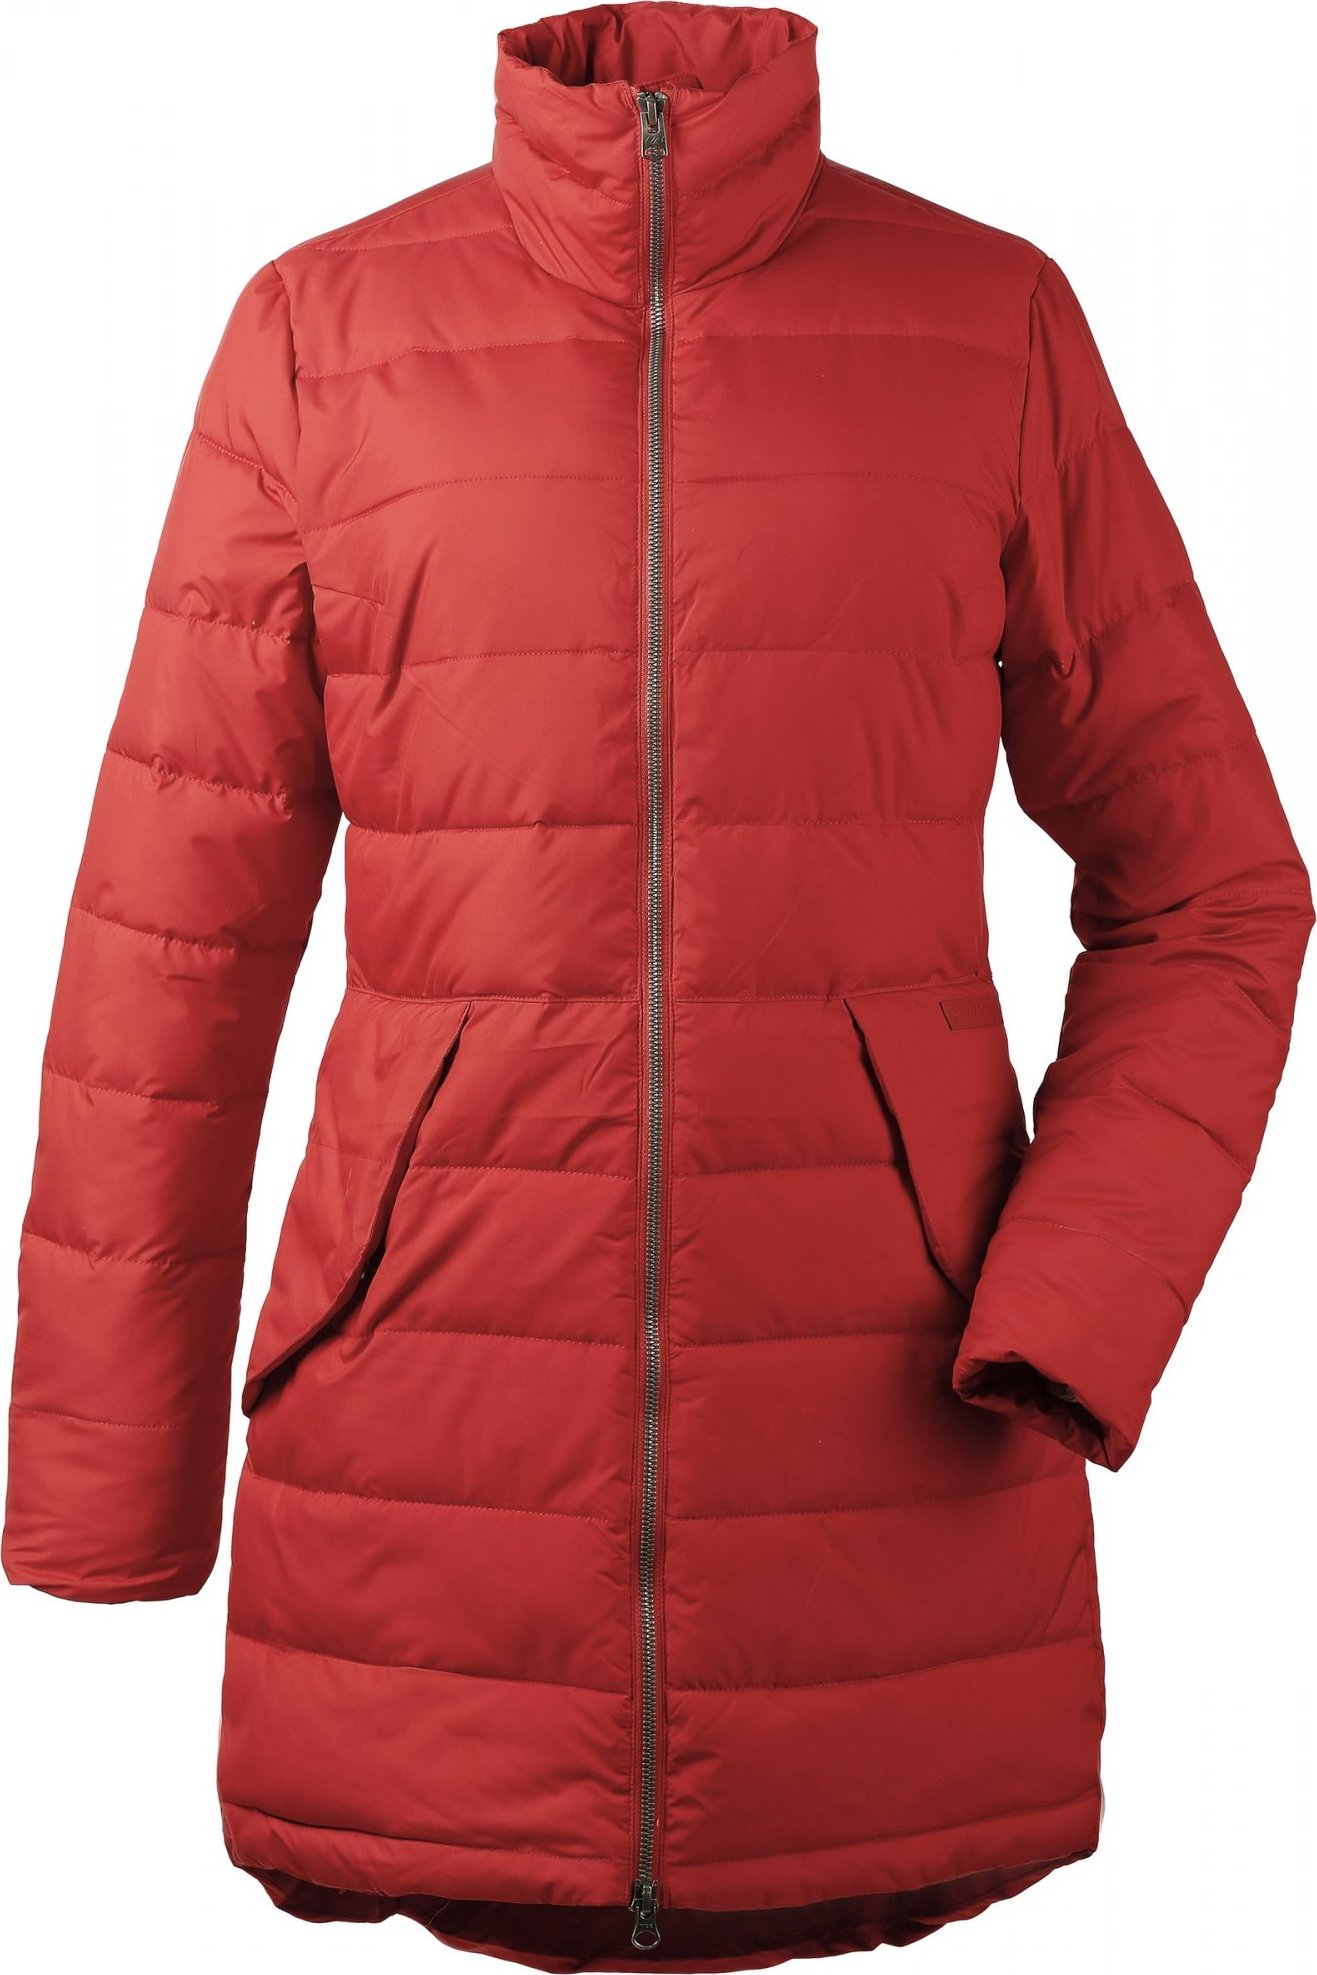 Dámský zimní kabát DIDRIKSONS Hildur oranžový Velikost: 36